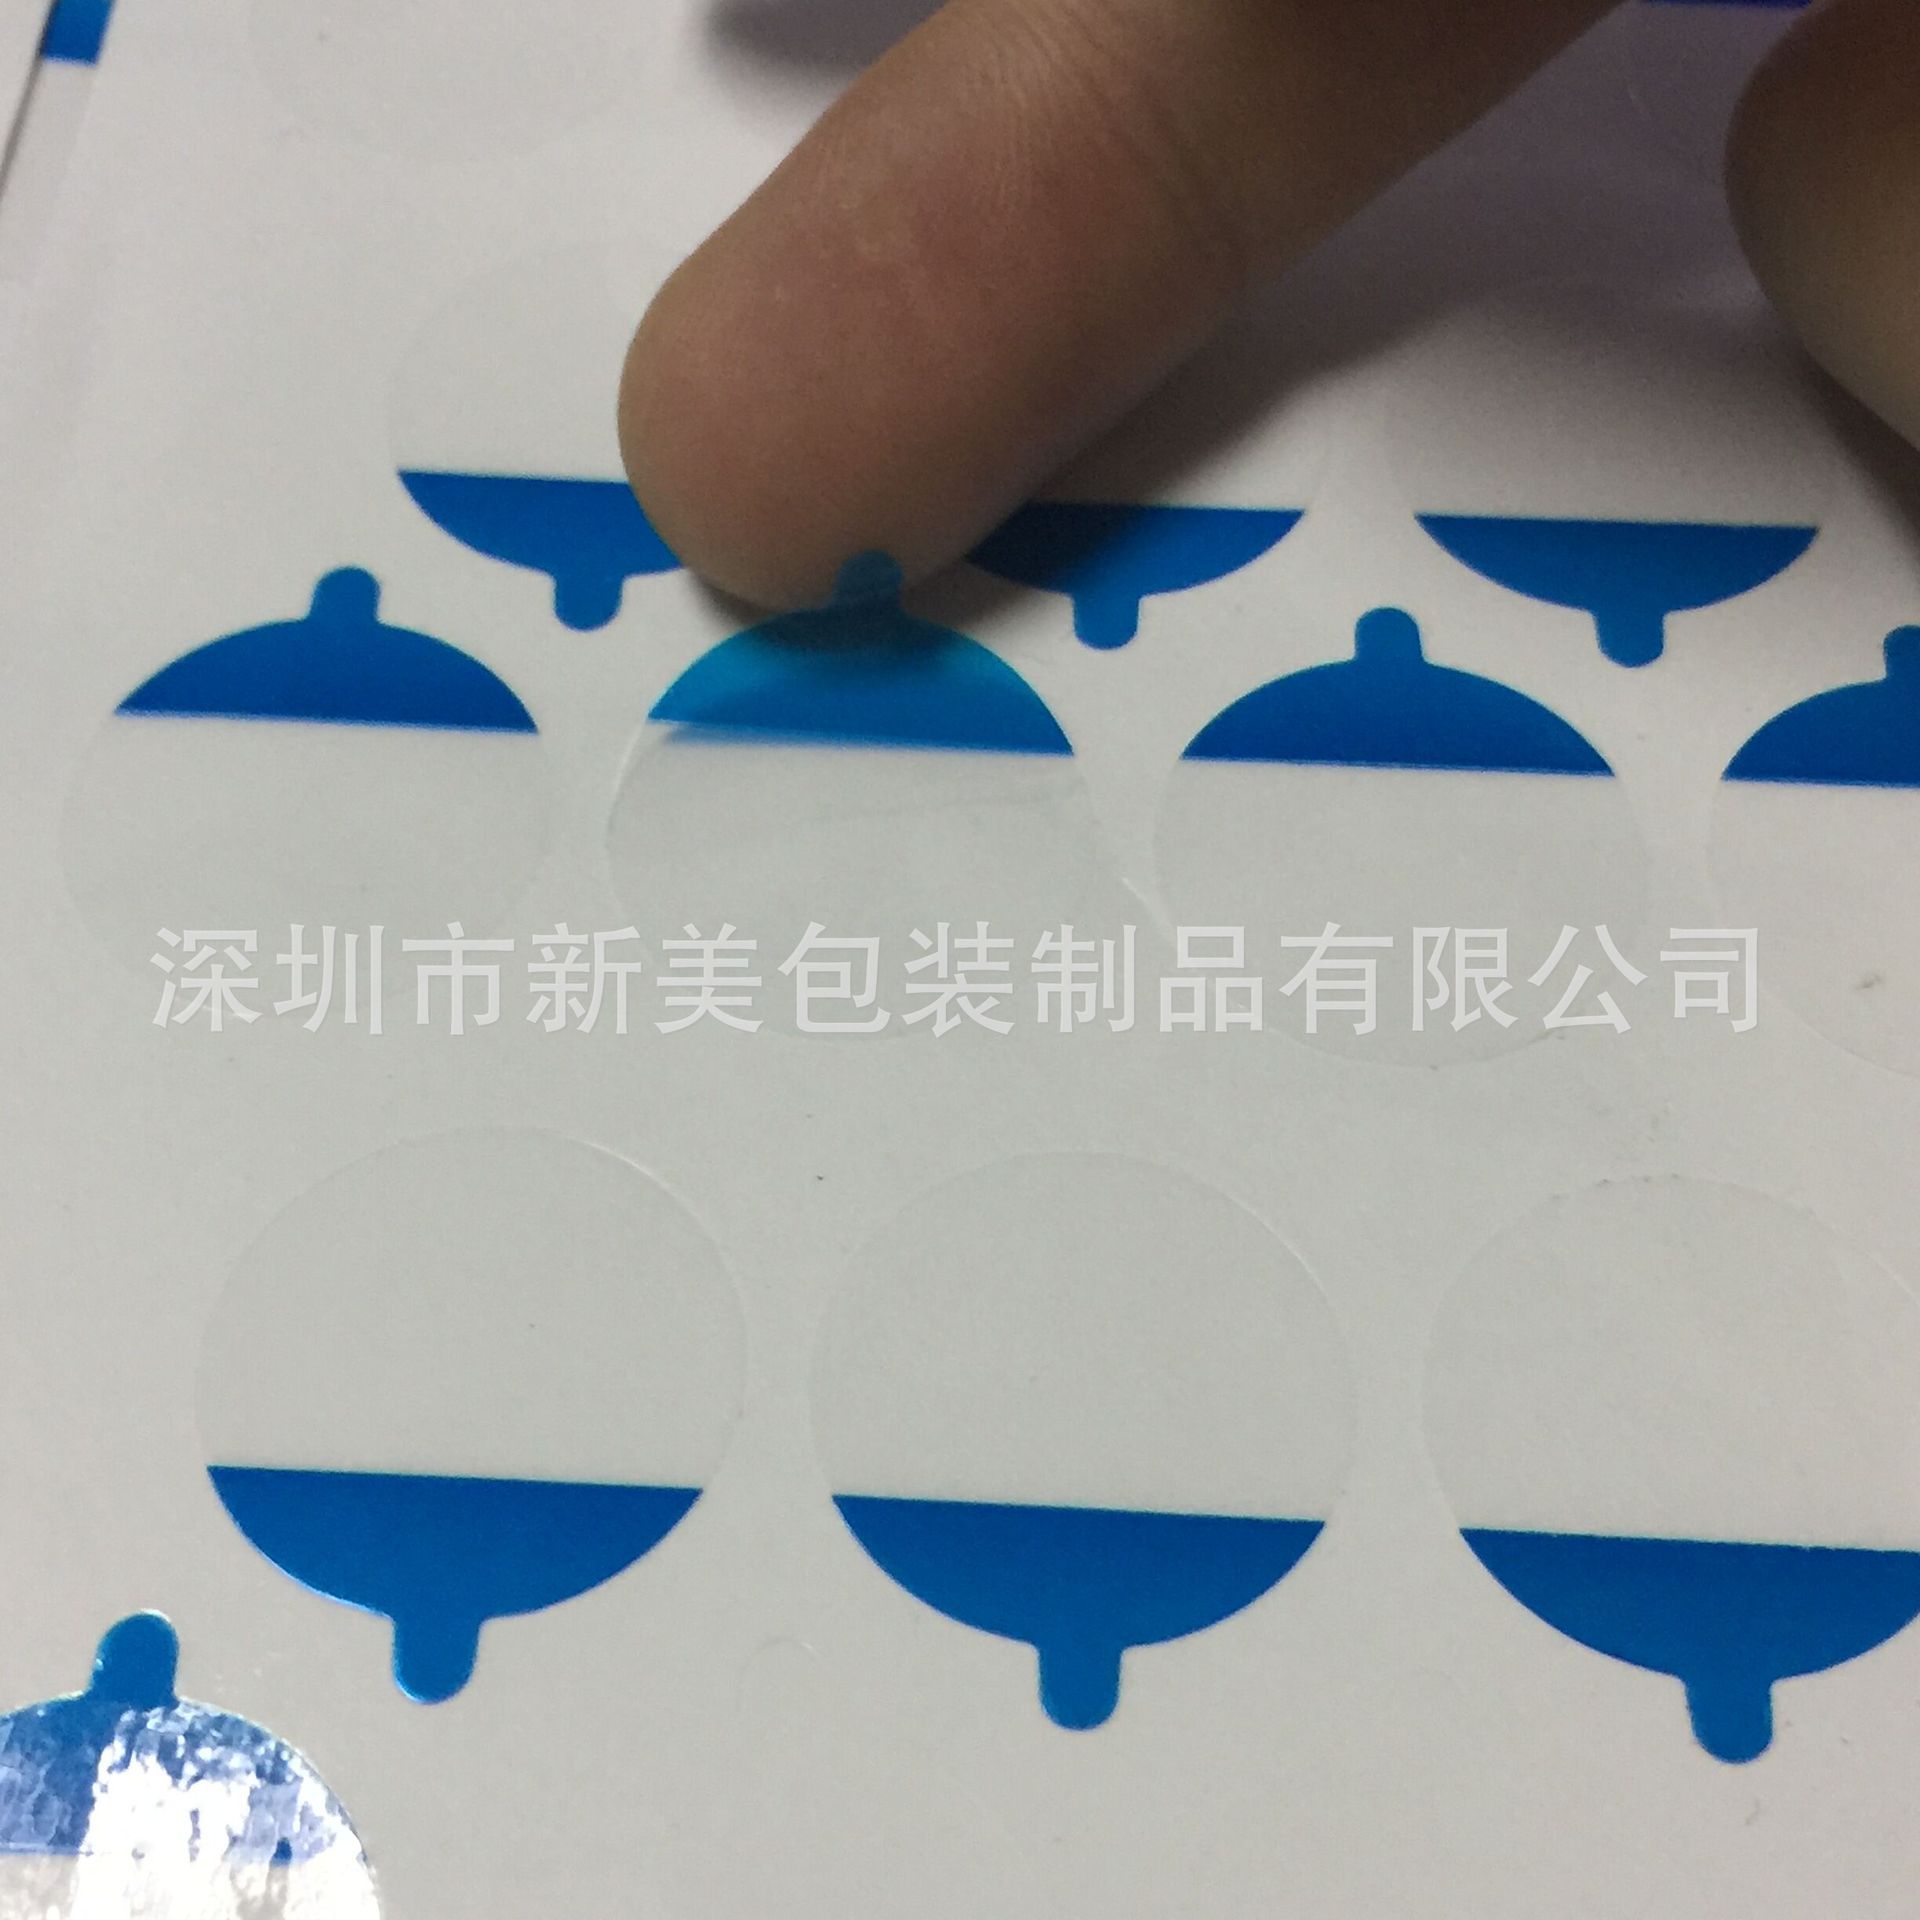 深圳市印刷透明保护膜厂家深圳工厂直销 圆形印刷透明保护膜 透明PET保护膜 印字透明保护膜 成品保护膜